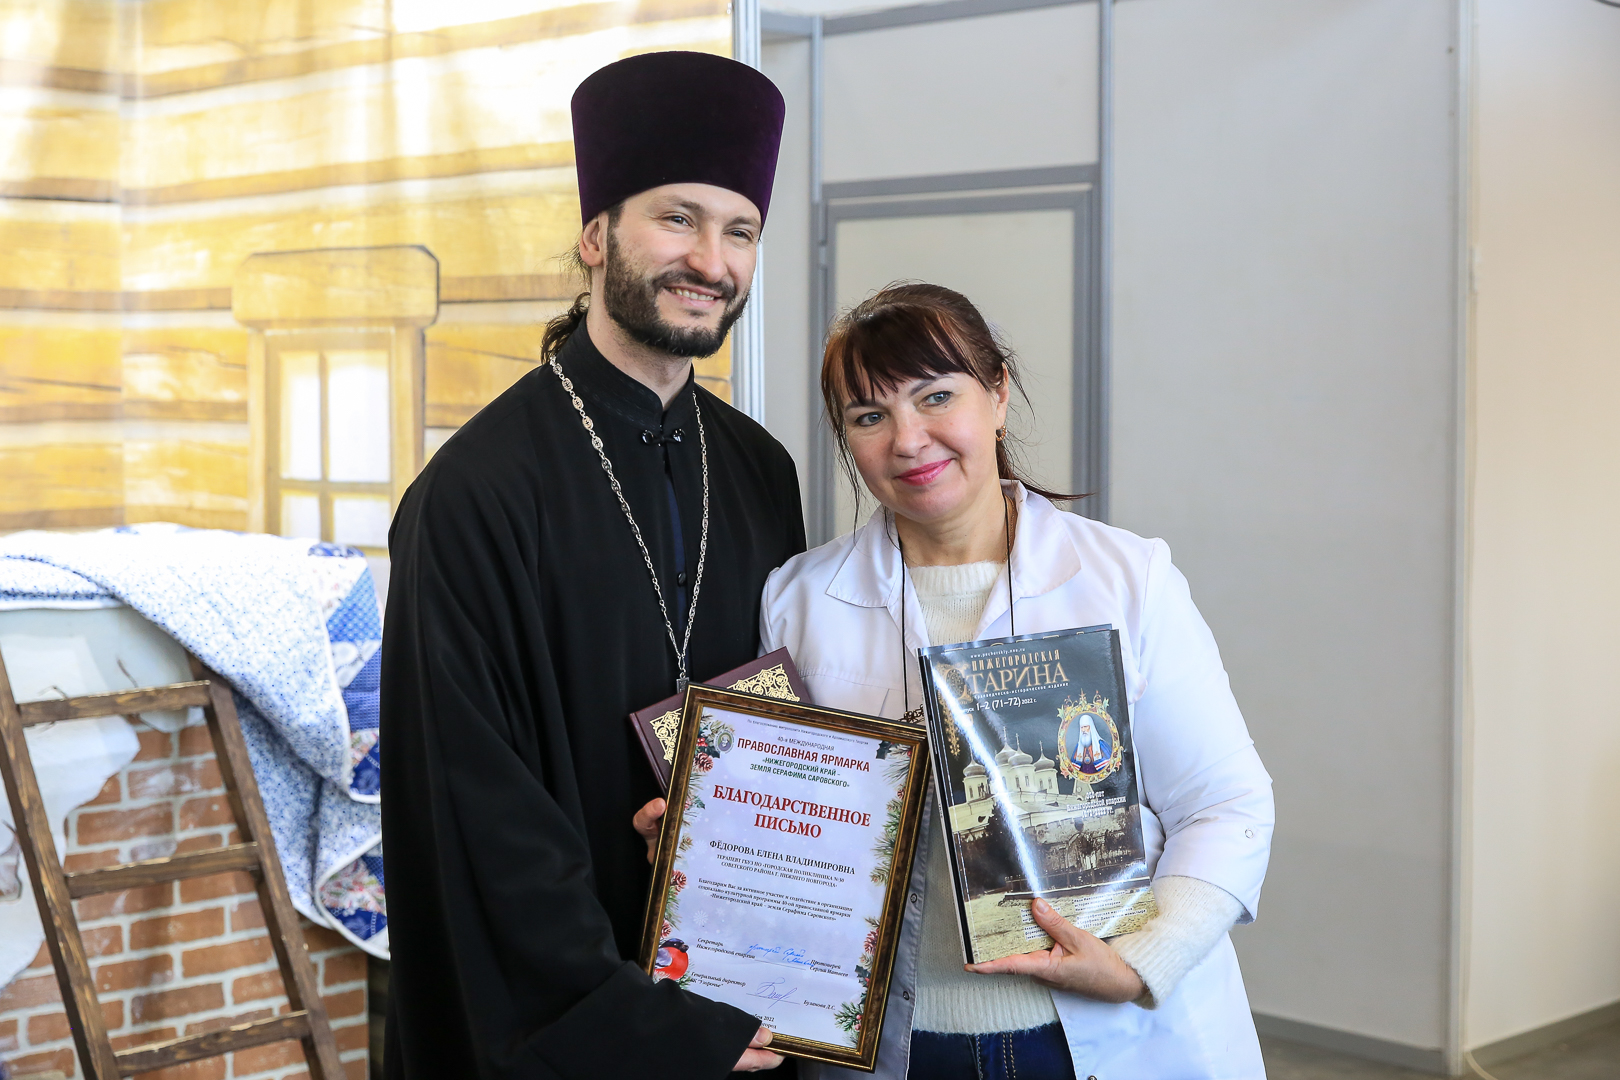 Где проходит ярмарка православная в нижнем новгороде